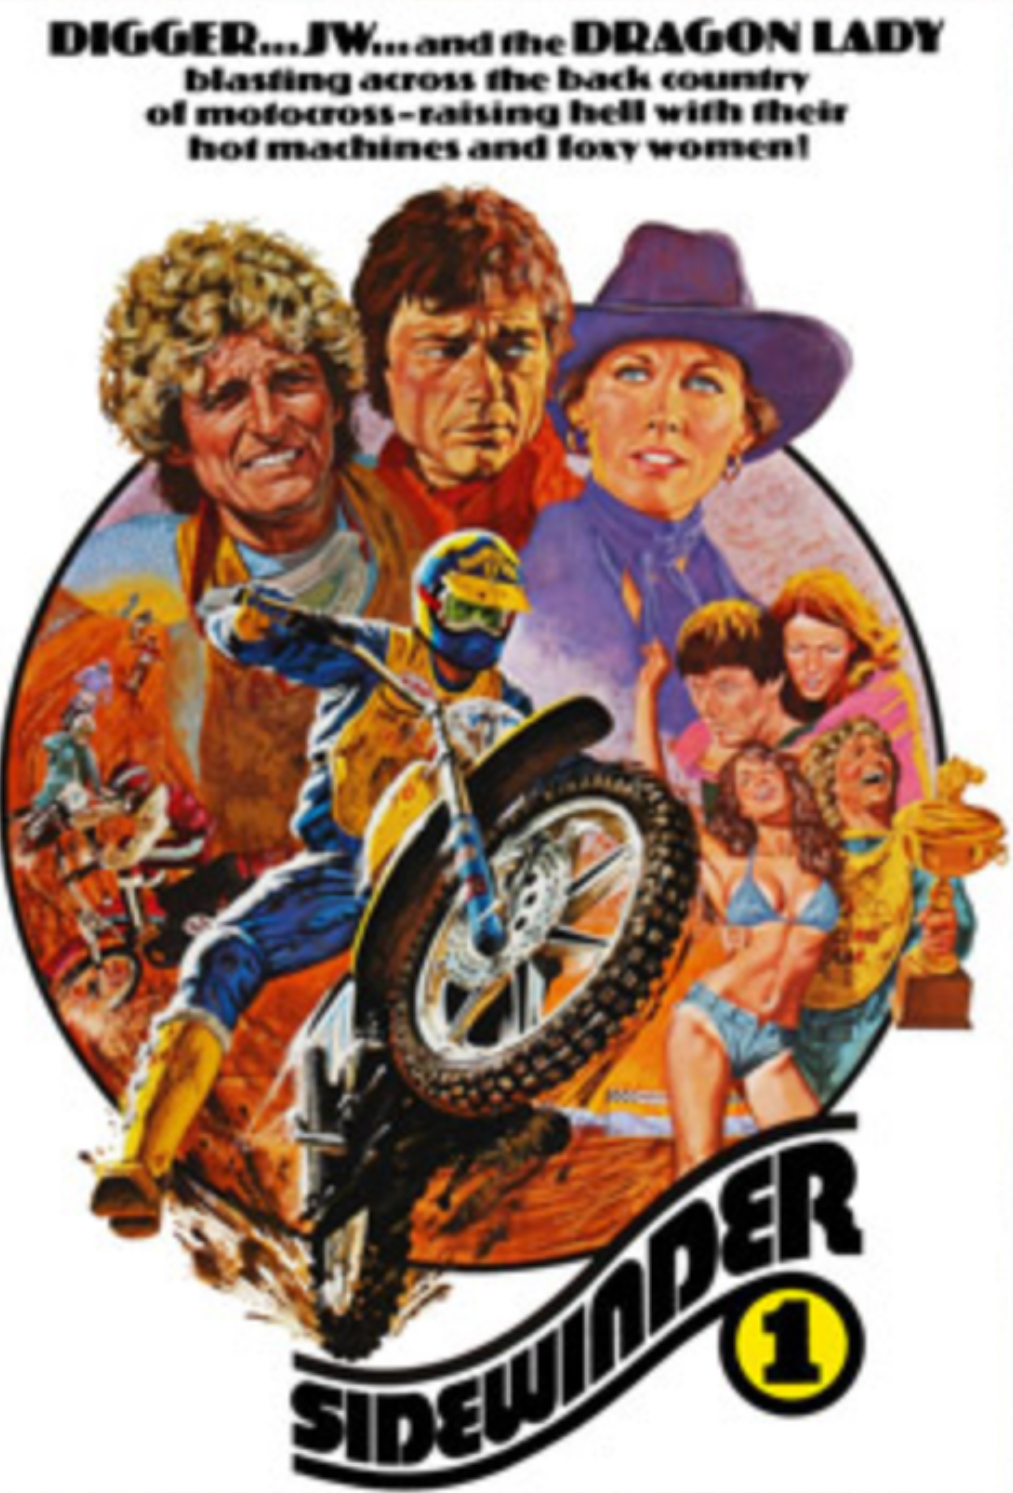 Sidewinder 1 (1977) Screenshot 2